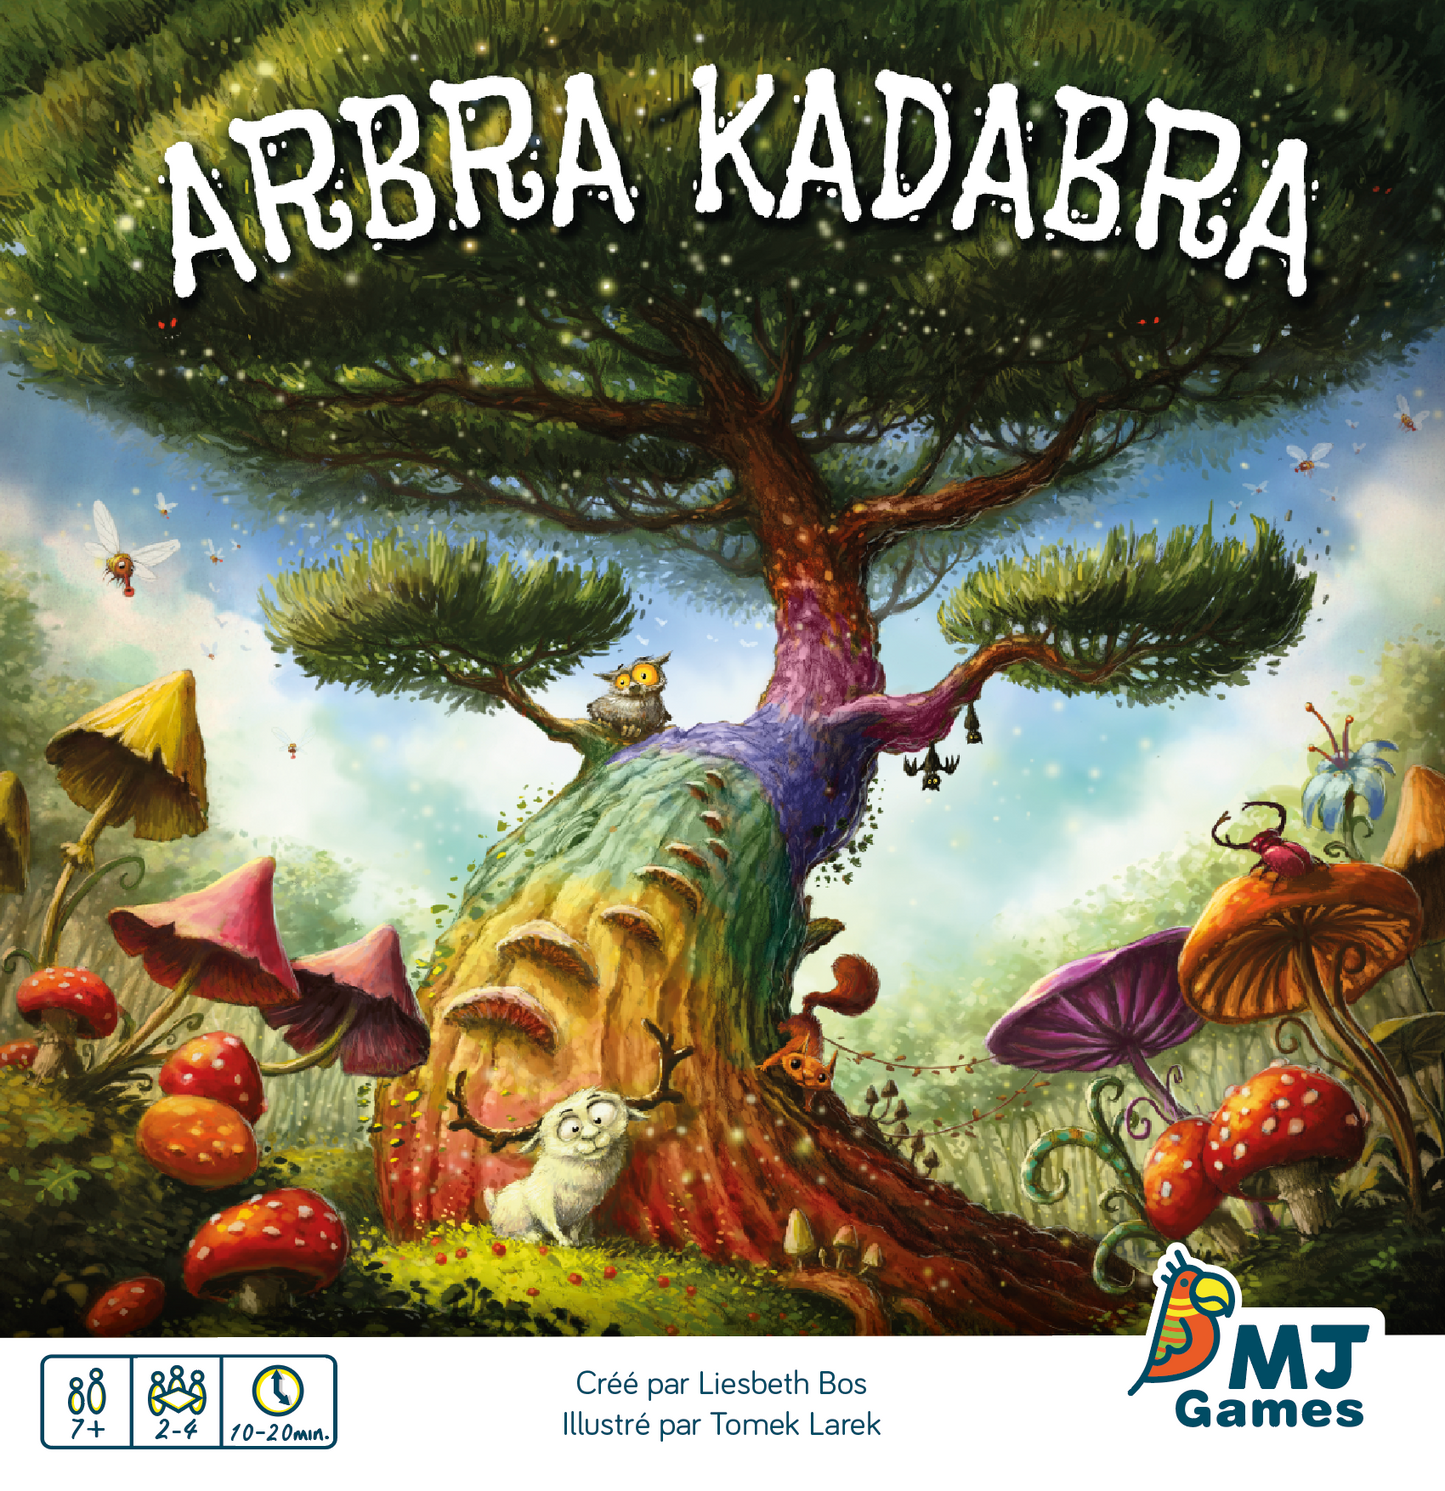 A7 - Arbra Kadabra